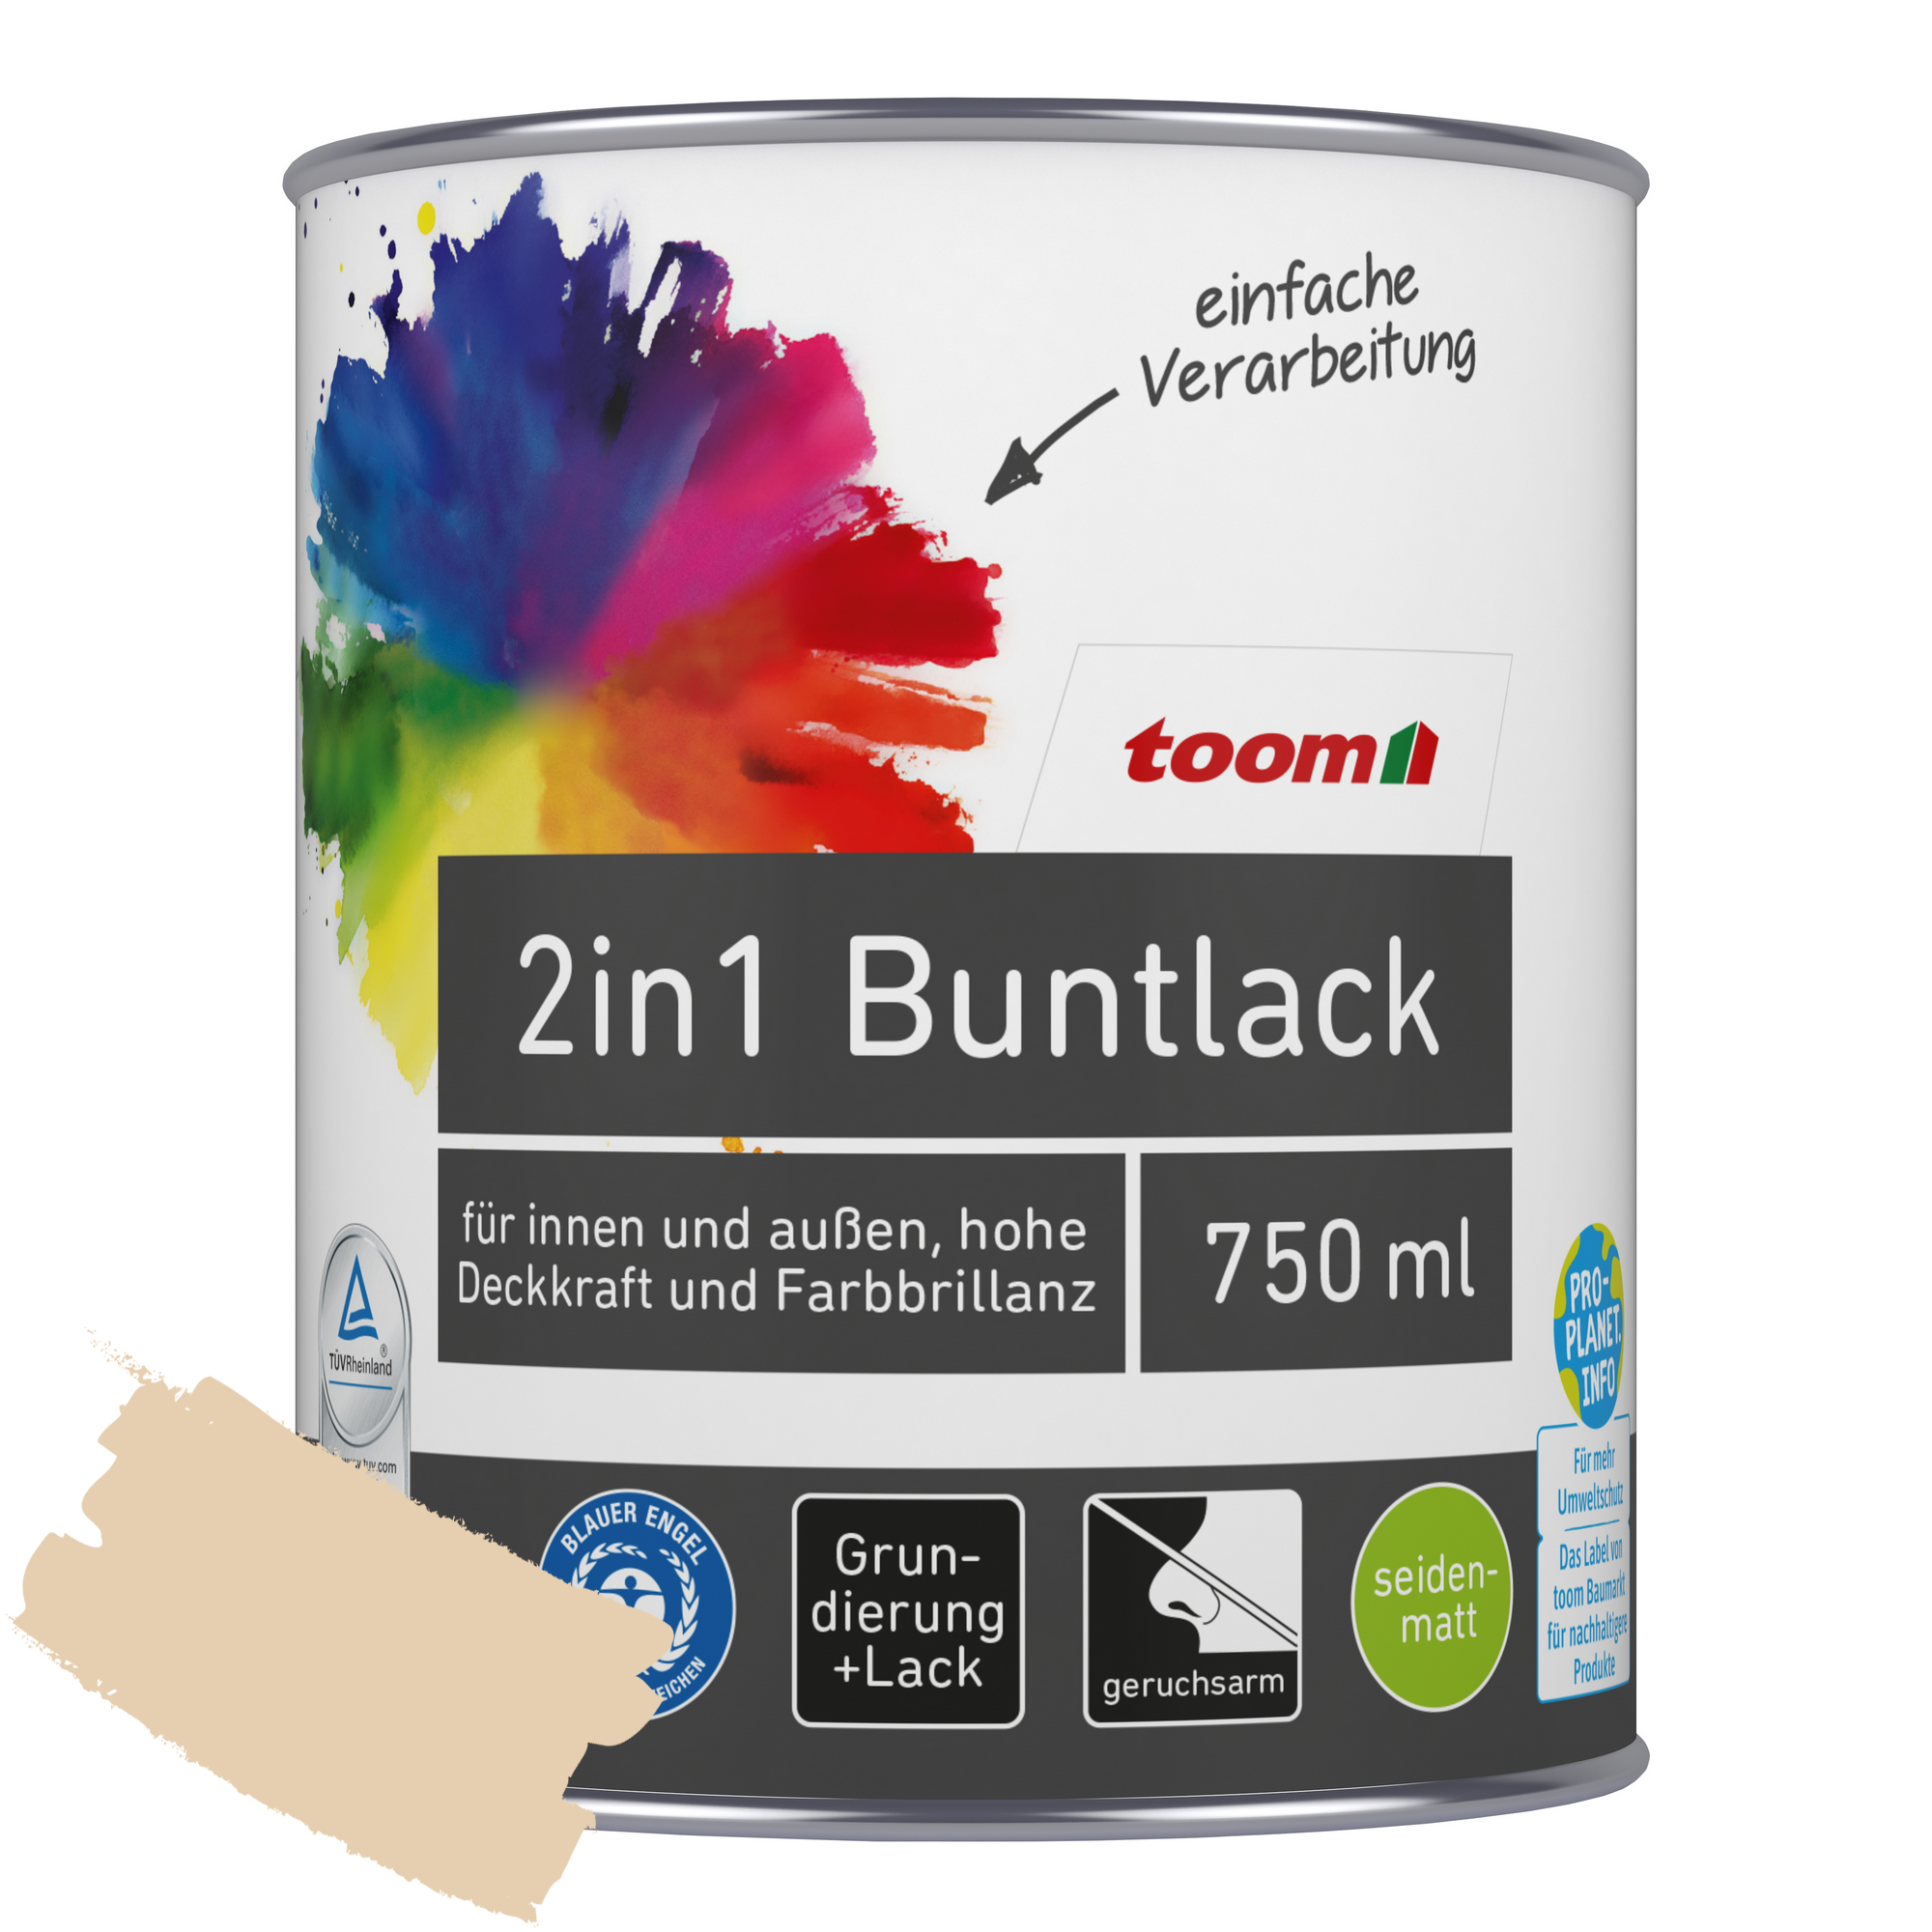 2in1 Buntlack 'Sonnenstrahl' hellelfenbein seidenmatt 750 ml + product picture